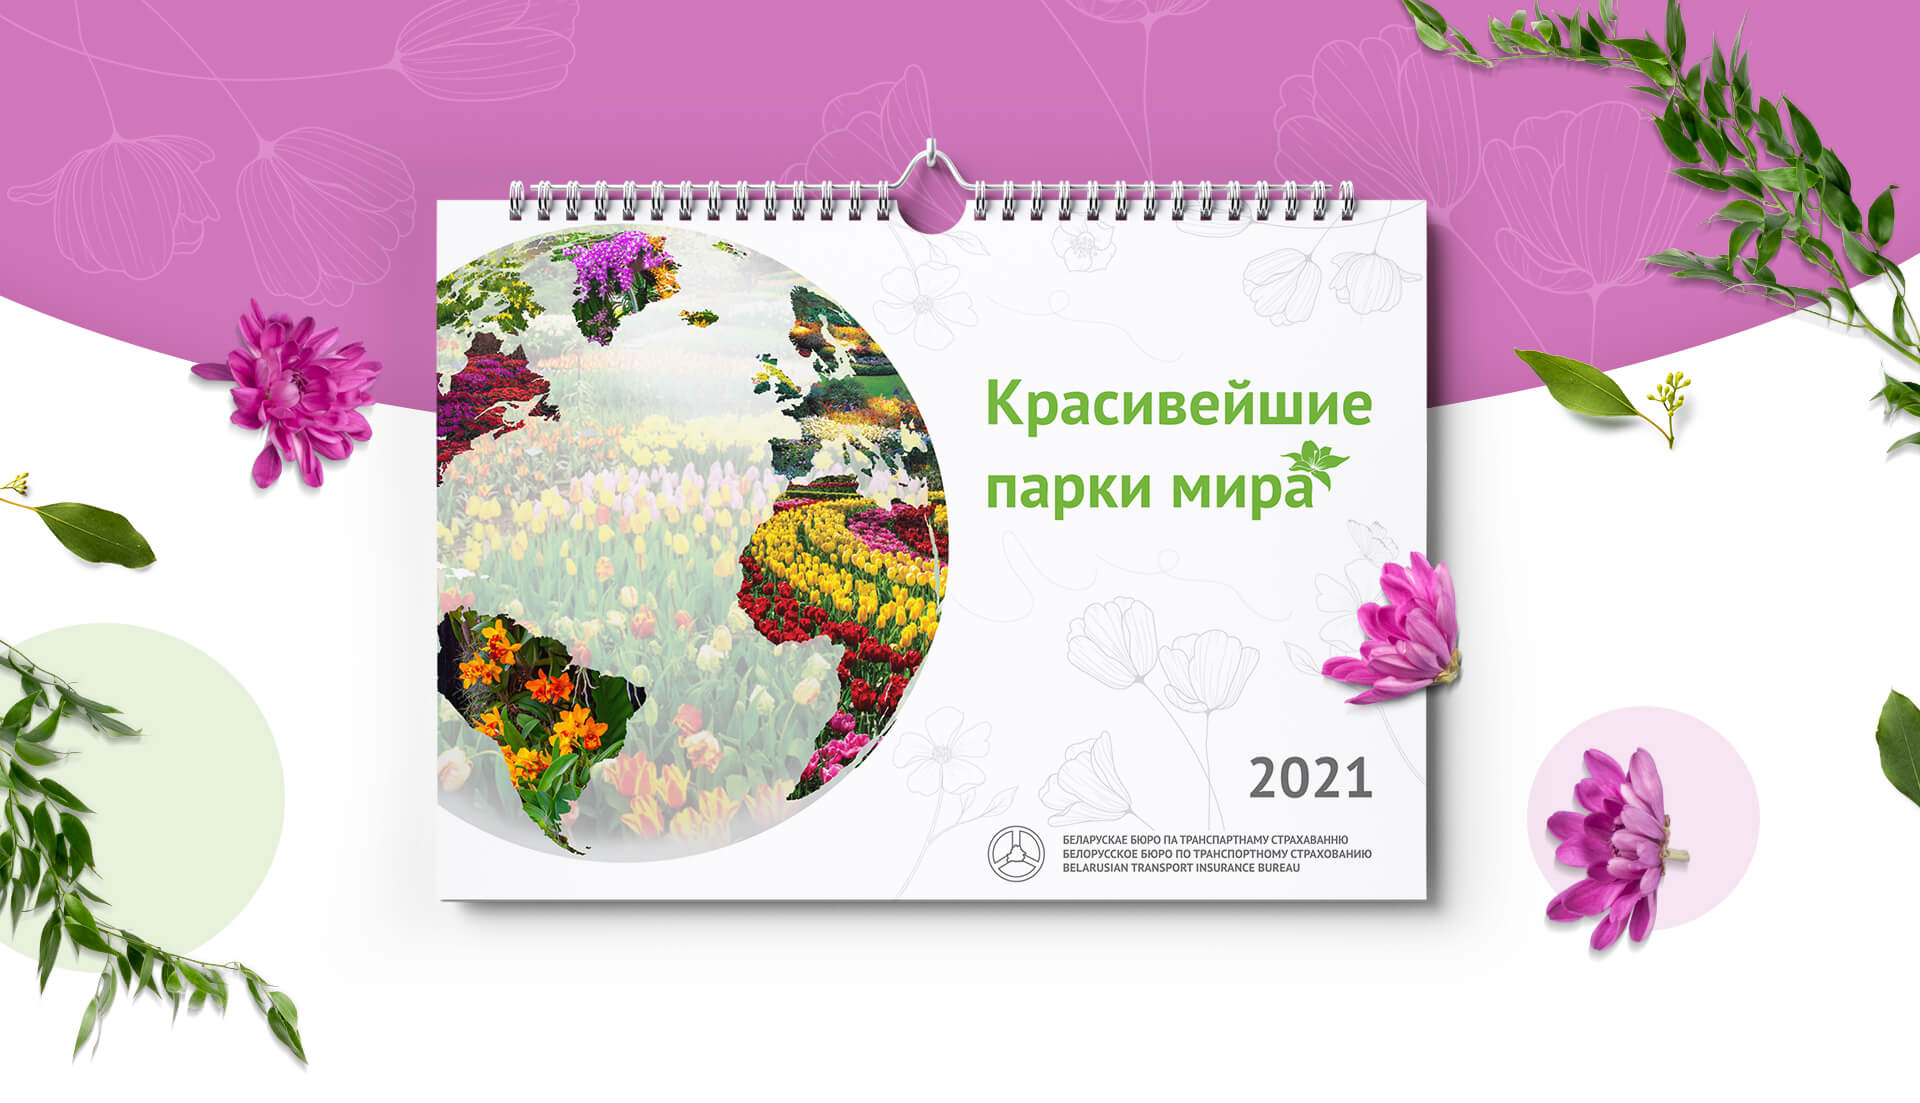 Создание серии корпоративных календарей для Белорусского бюро по транспортному страхованию.